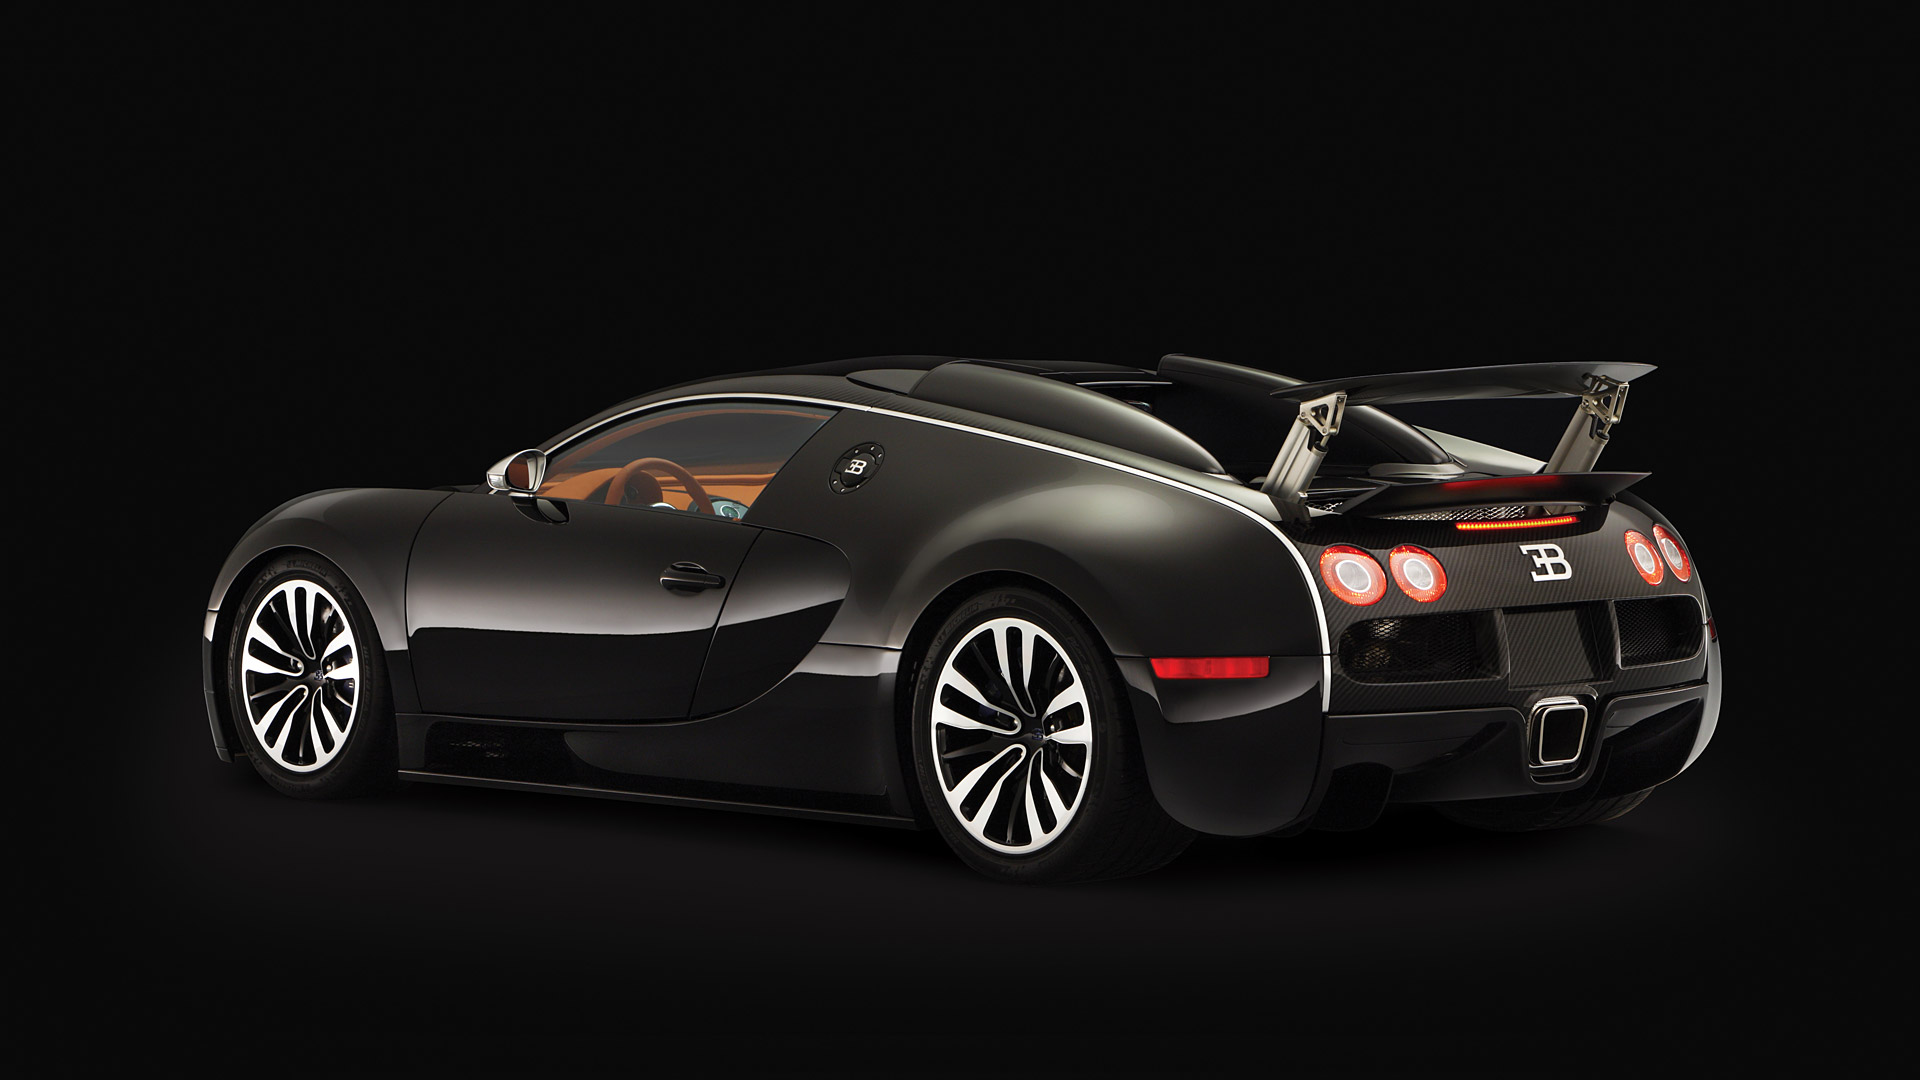  2008 Bugatti Veyron Sang Noir Wallpaper.